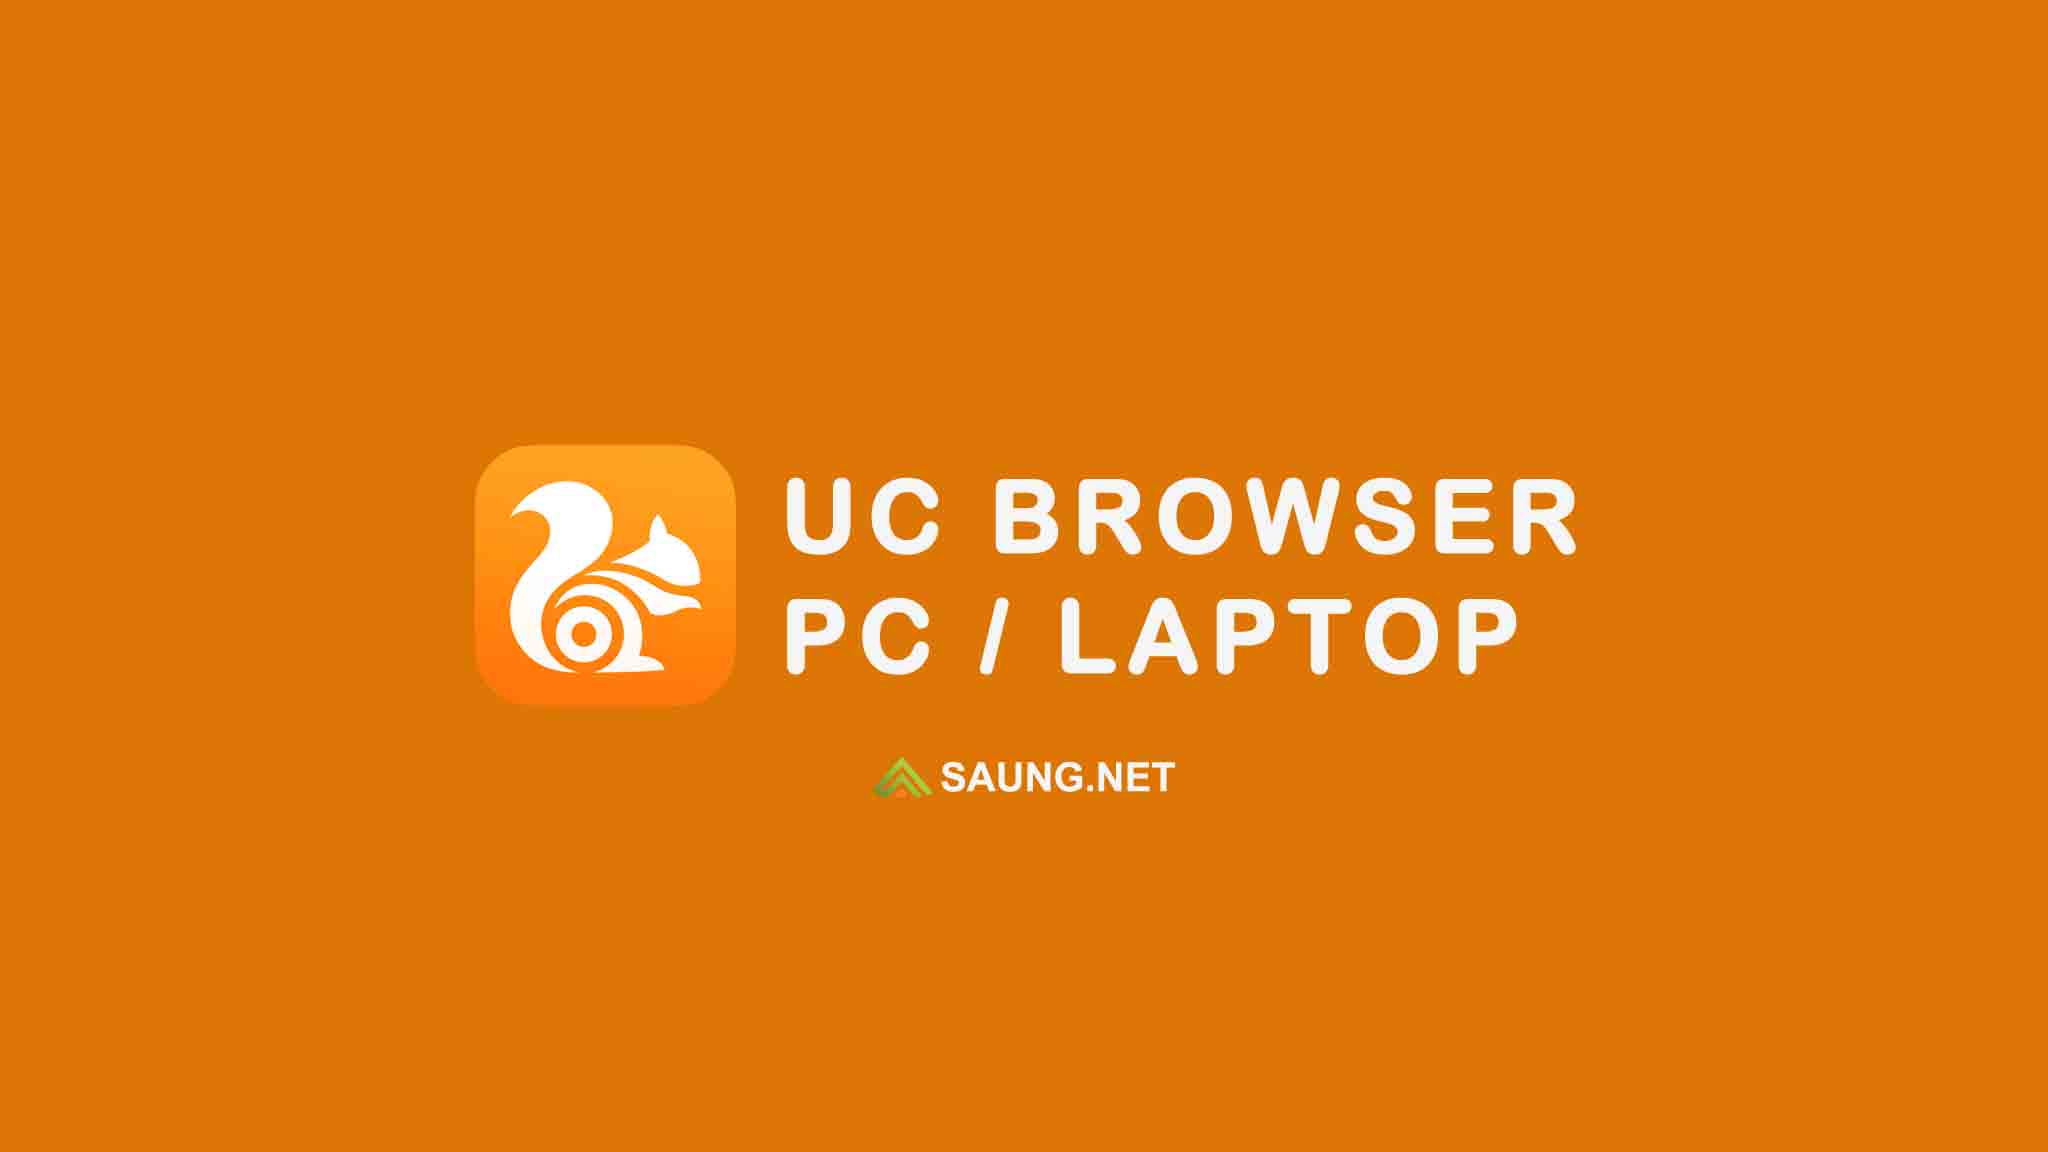 Cara Download Video Di Uc Browser Pc. √ Cara Download dan Install UC Browser di PC